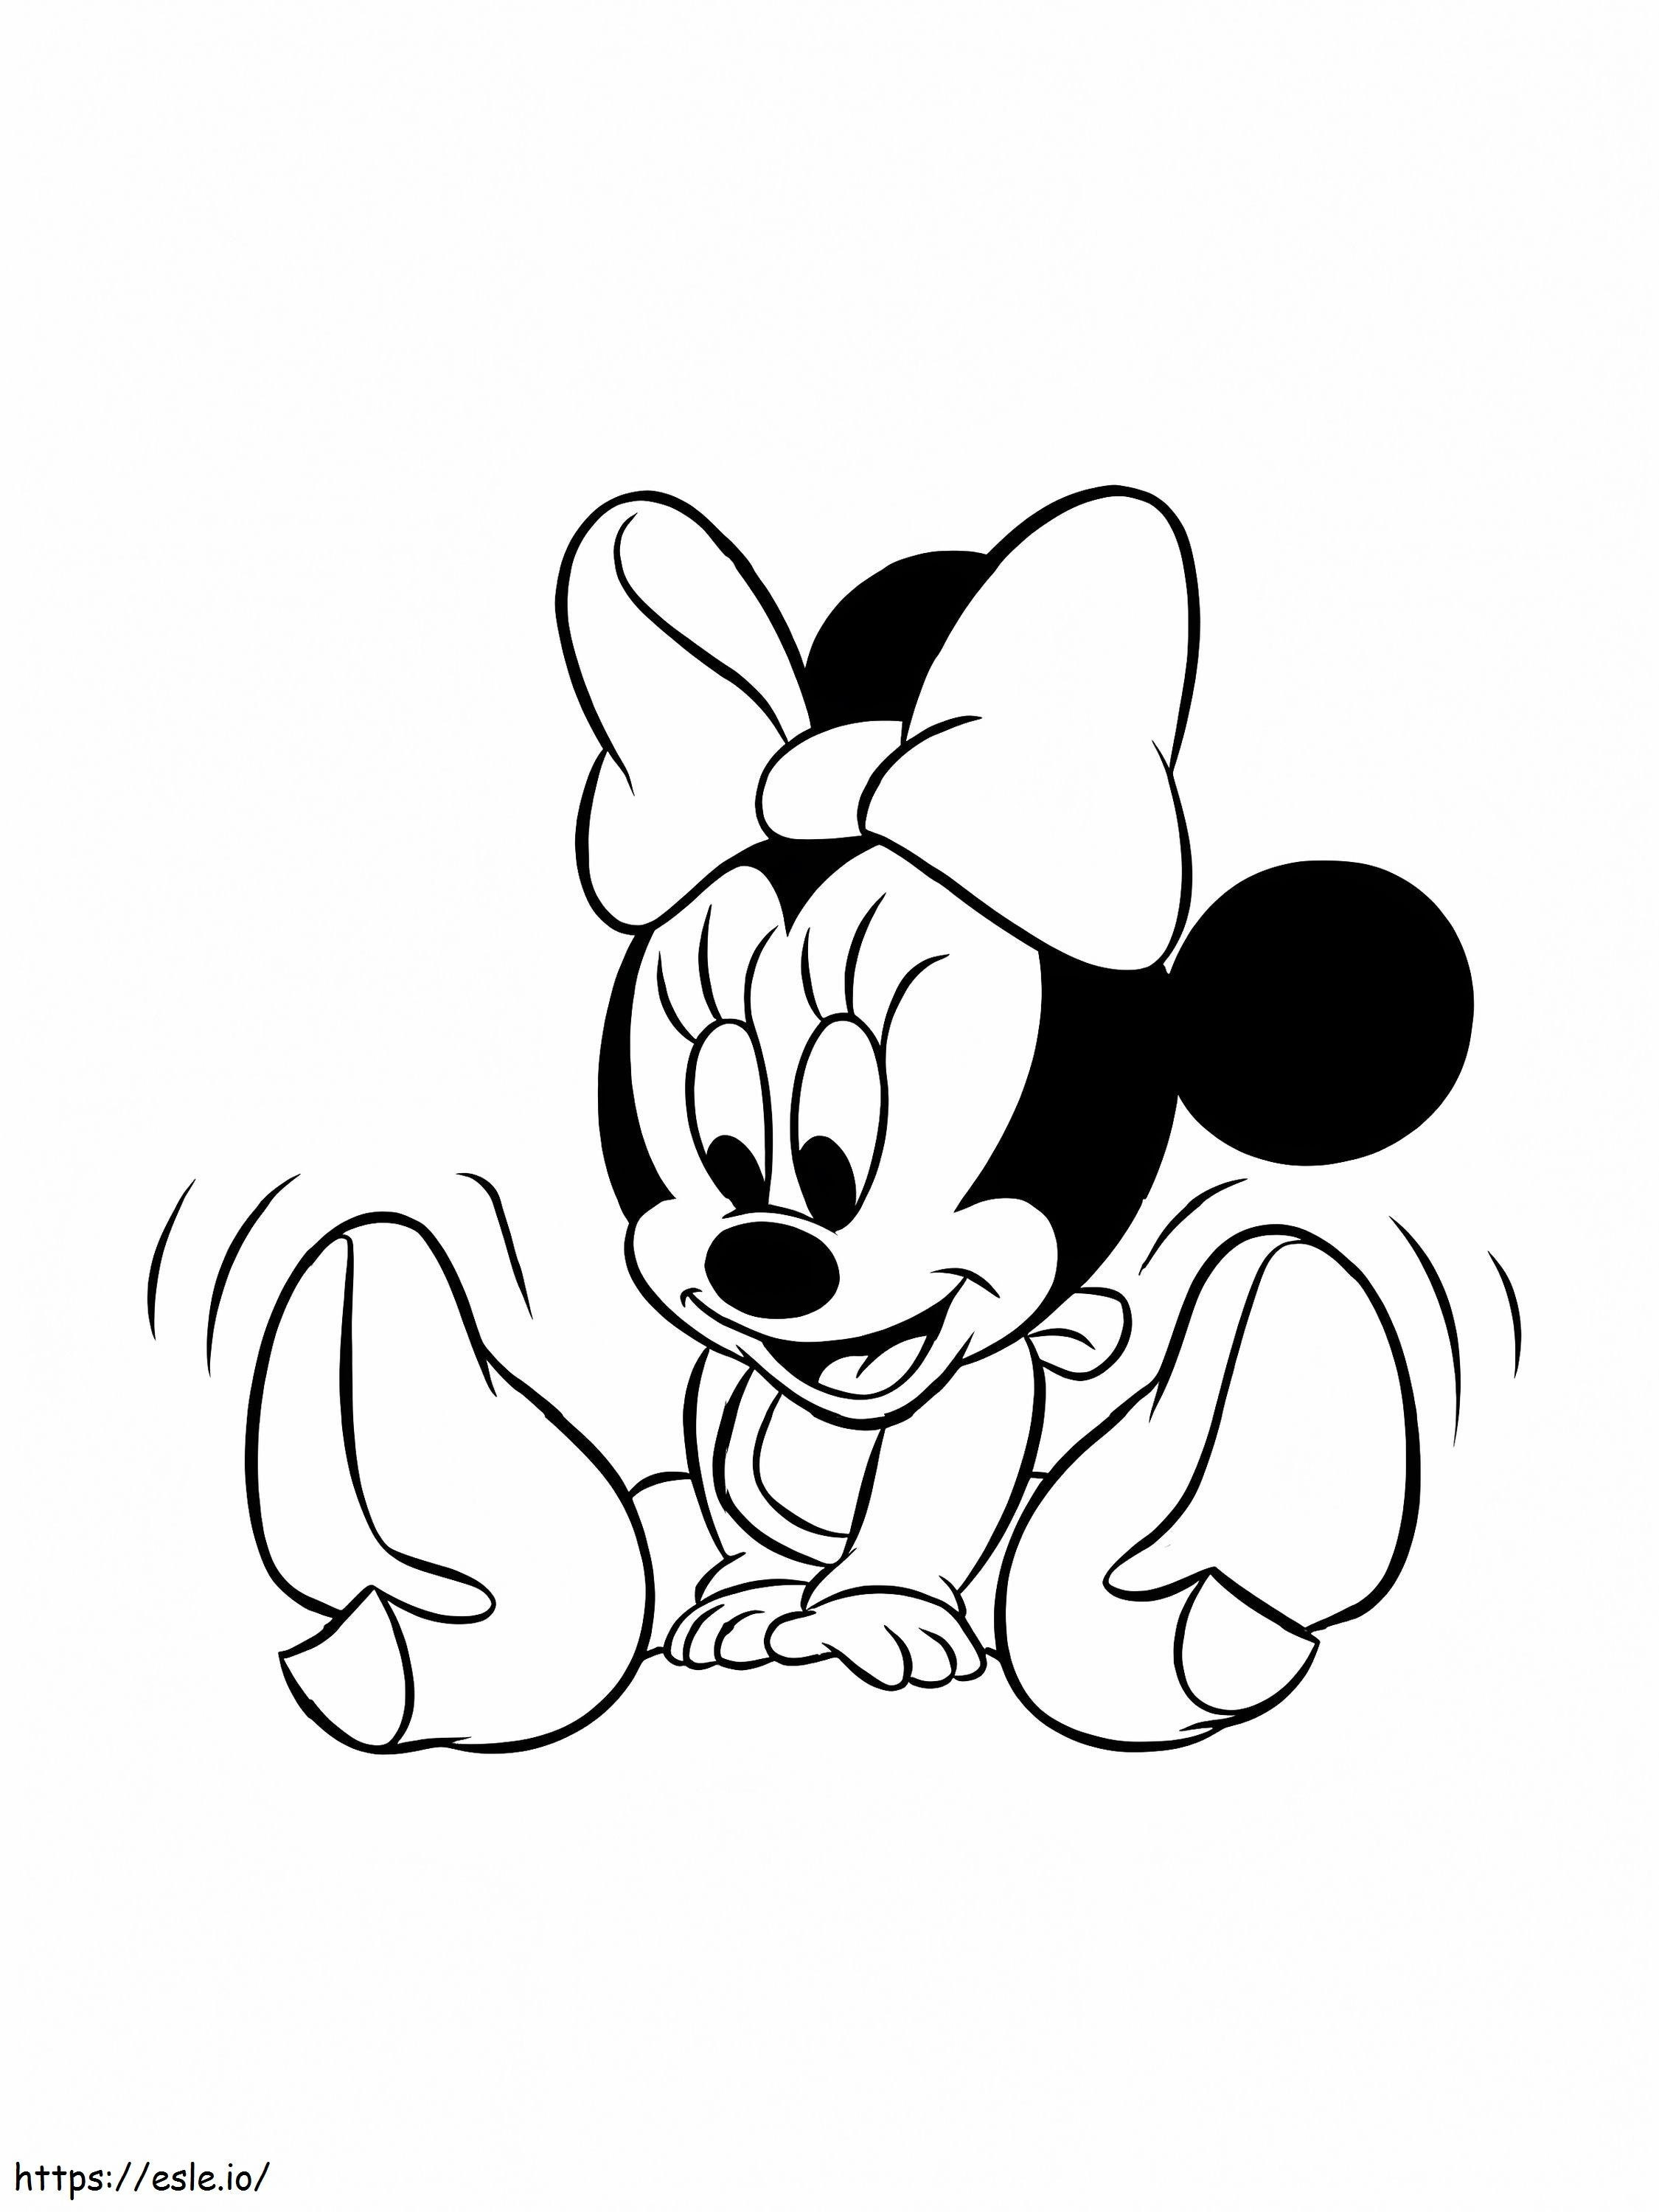 Coloriage Mignon bébé Disney Minnie à imprimer dessin